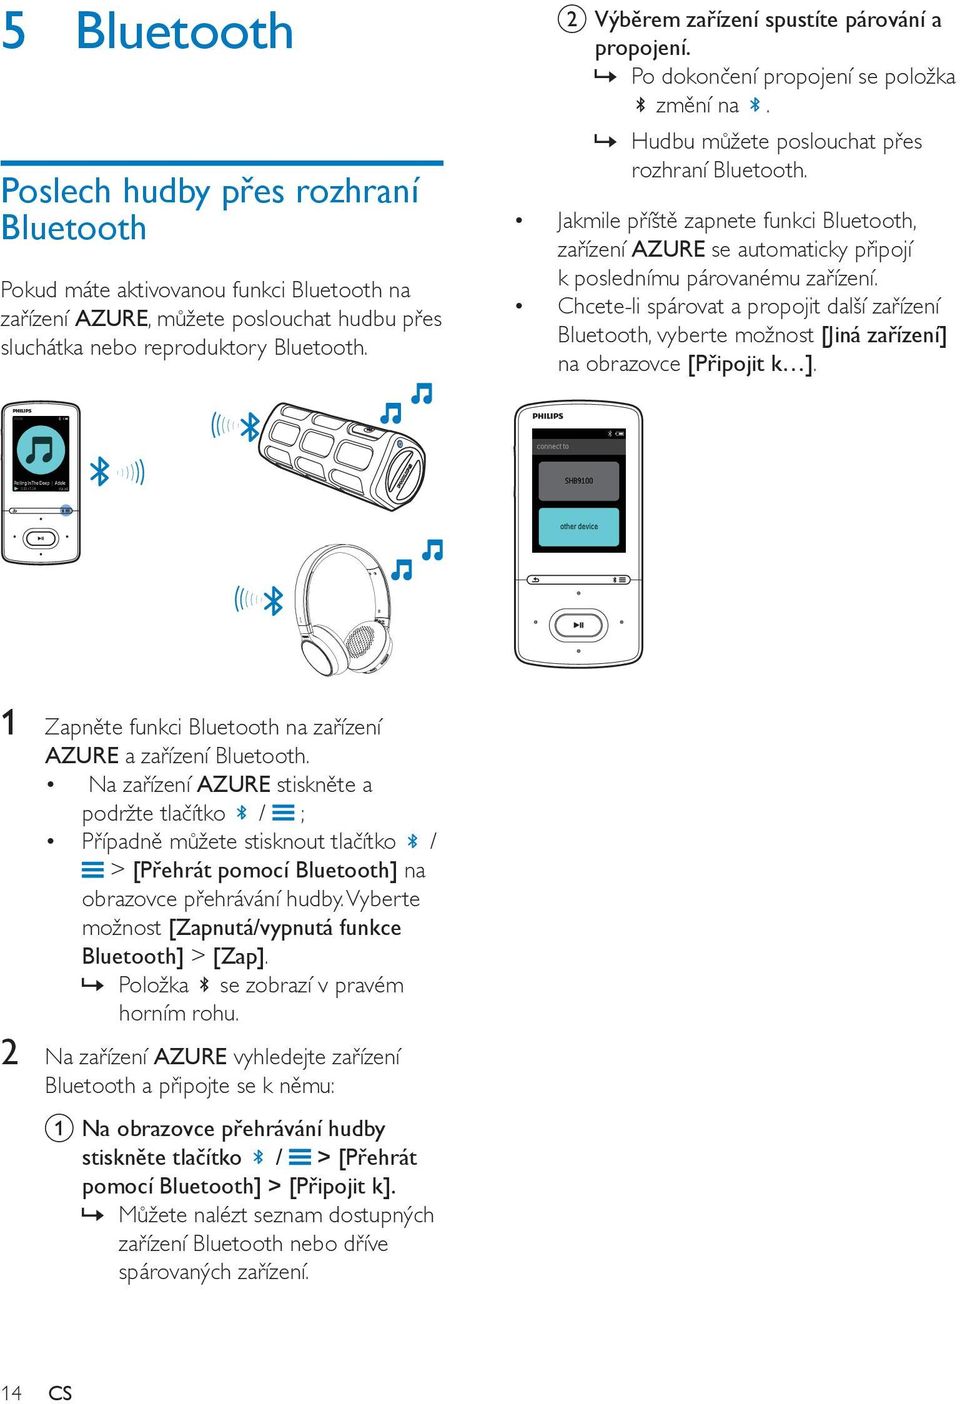 Jakmile příště zapnete funkci Bluetooth, zařízení AZURE se automaticky připojí k poslednímu párovanému zařízení.